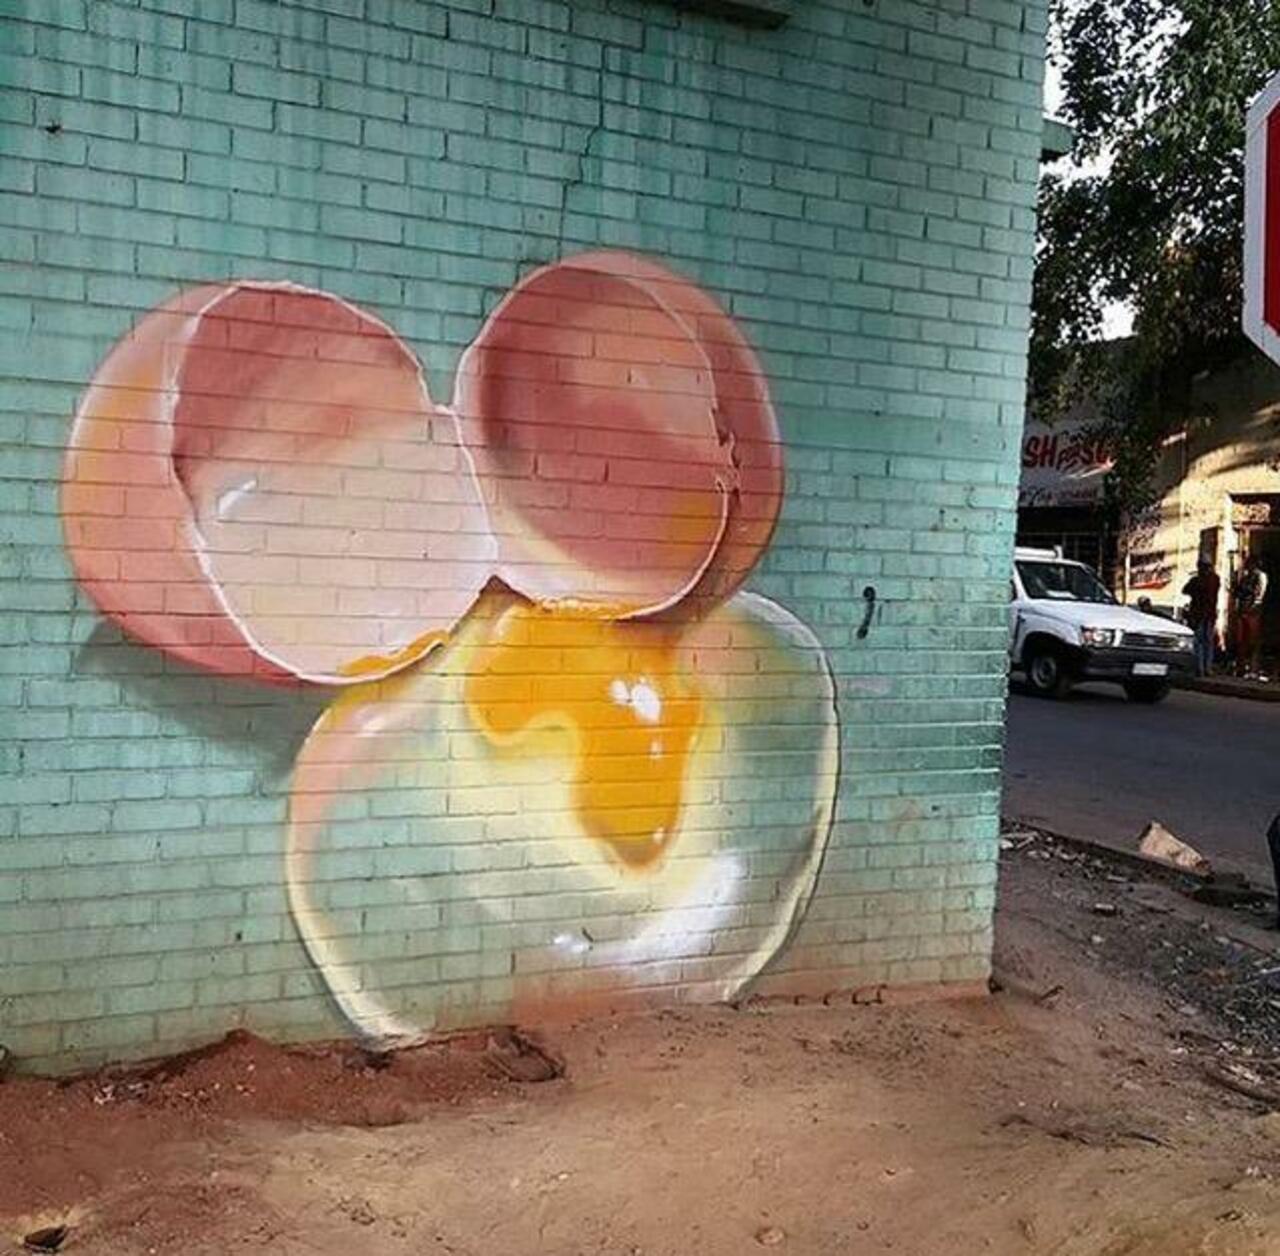 Street Art by falco1 in Johannesburg SA  

#art #graffiti #mural #streetart http://t.co/iGhOlIJTez